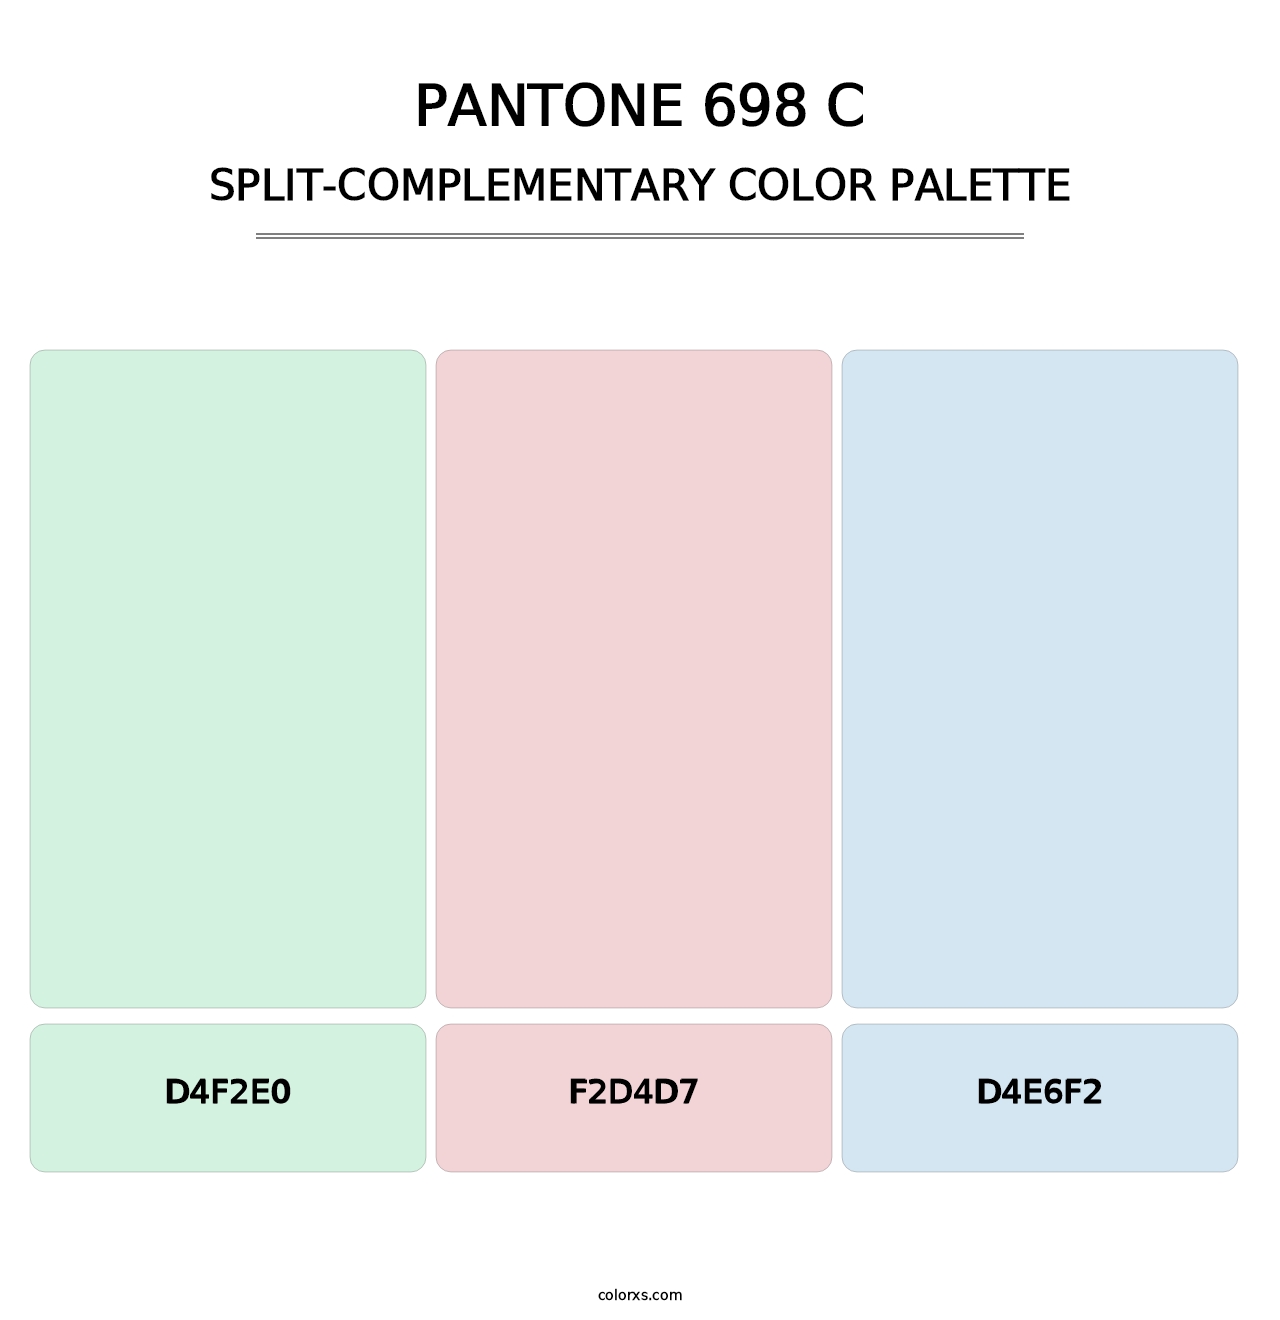 PANTONE 698 C - Split-Complementary Color Palette